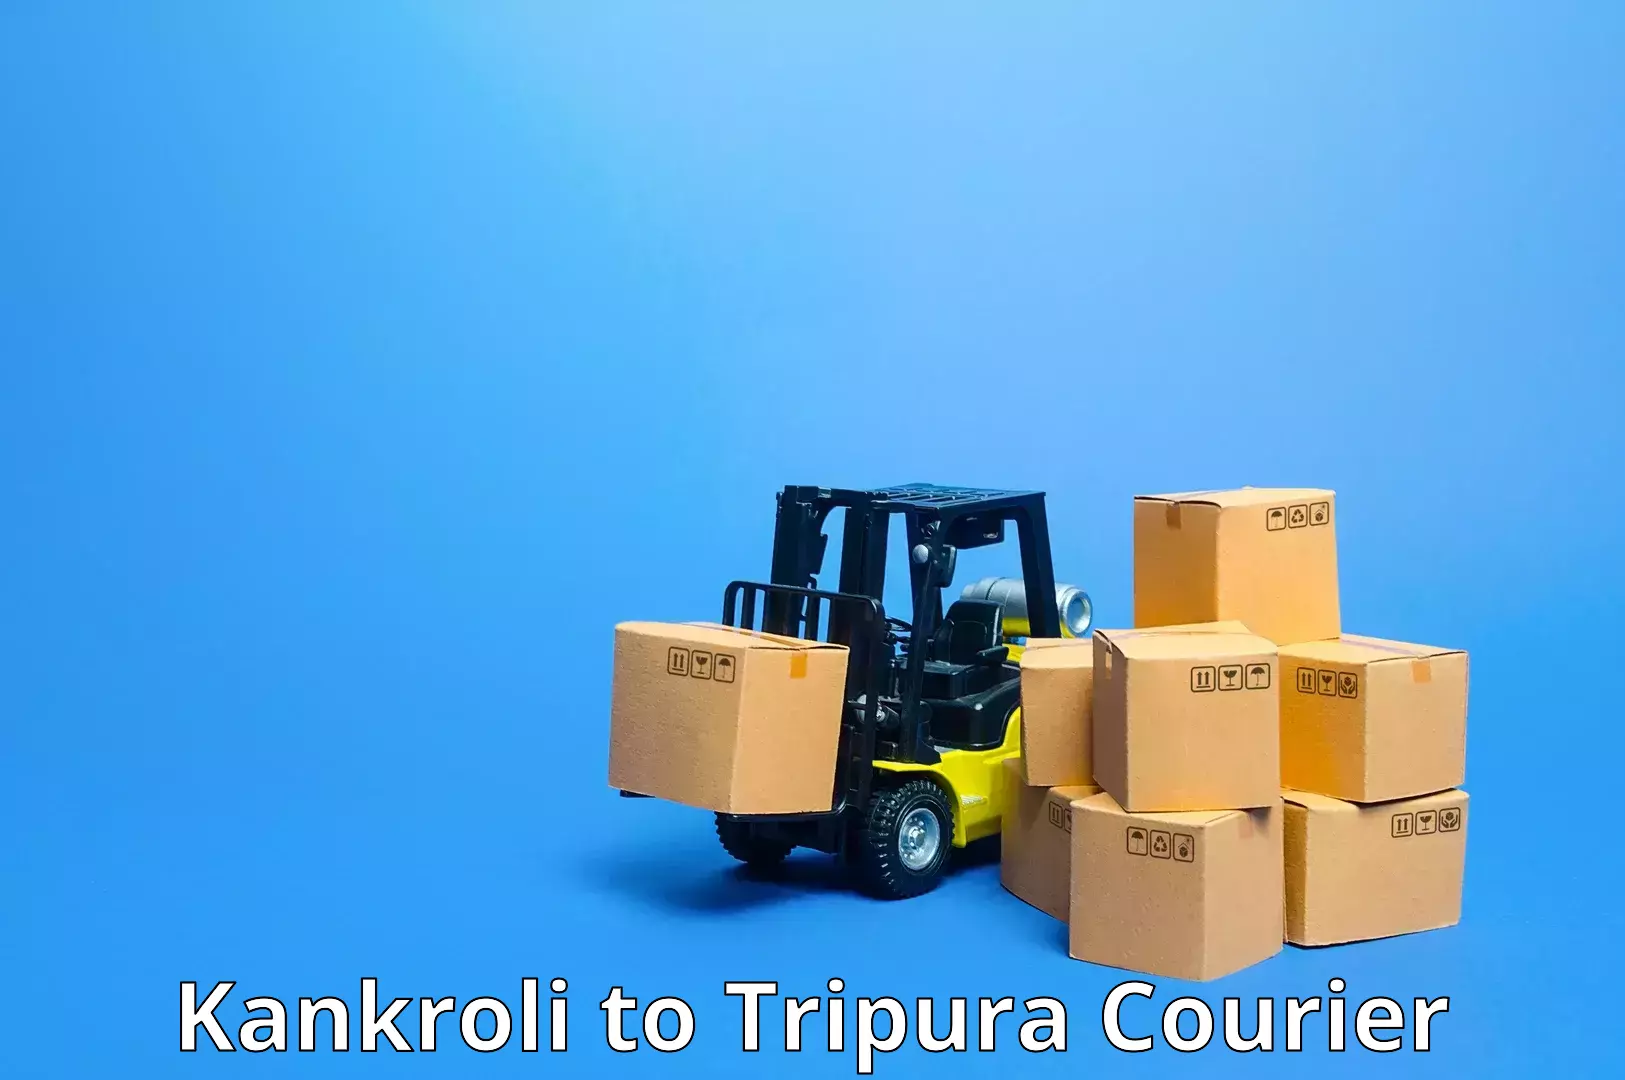 Full-service courier options Kankroli to IIIT Agartala